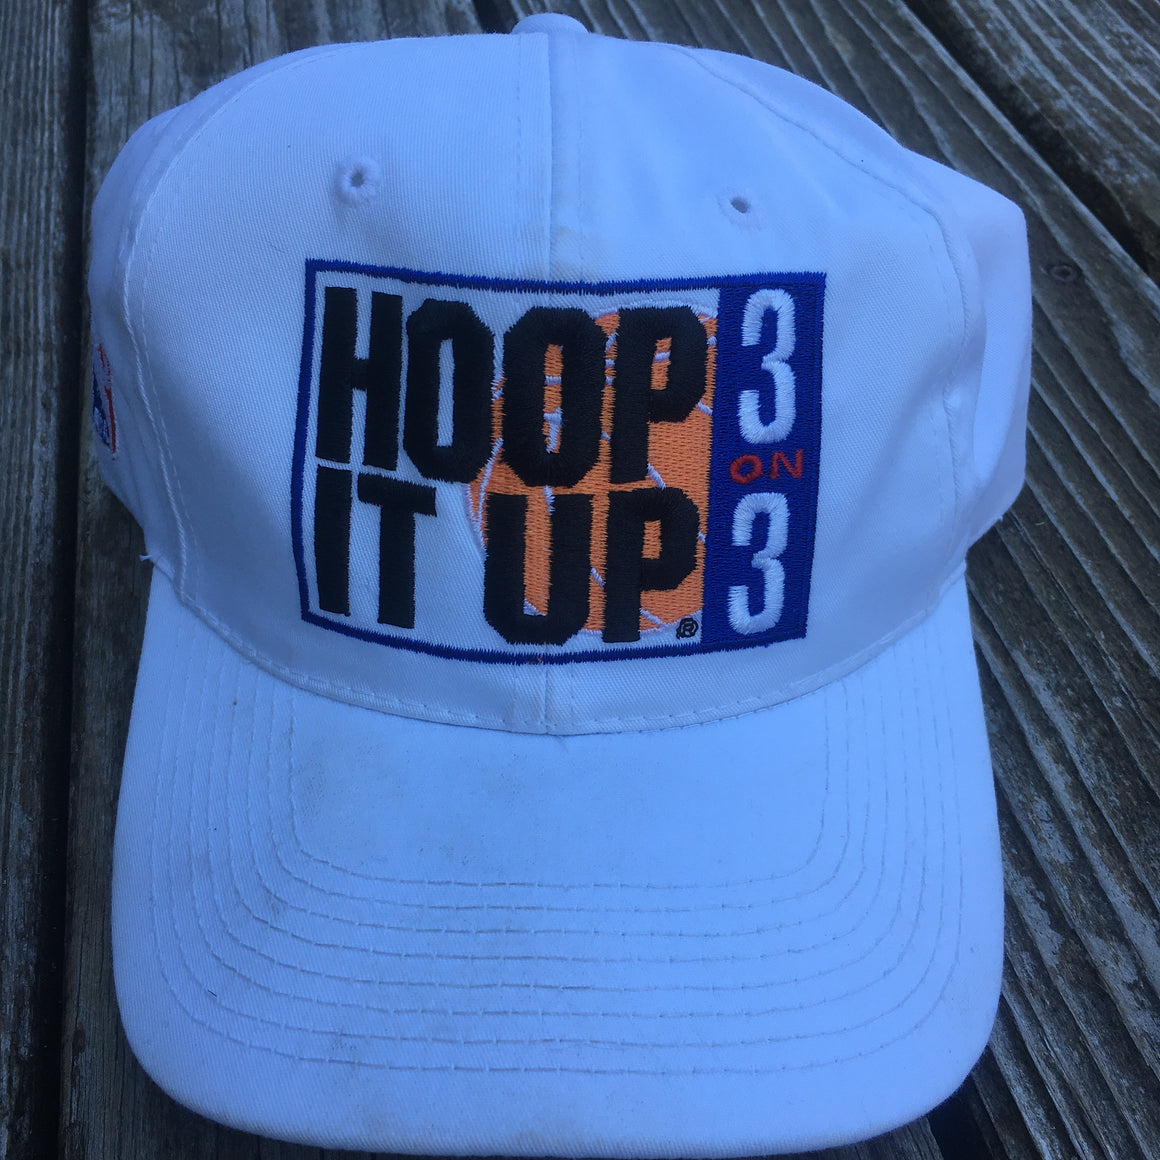 NBA Hoop it Up 3 on 3 vintage Hat